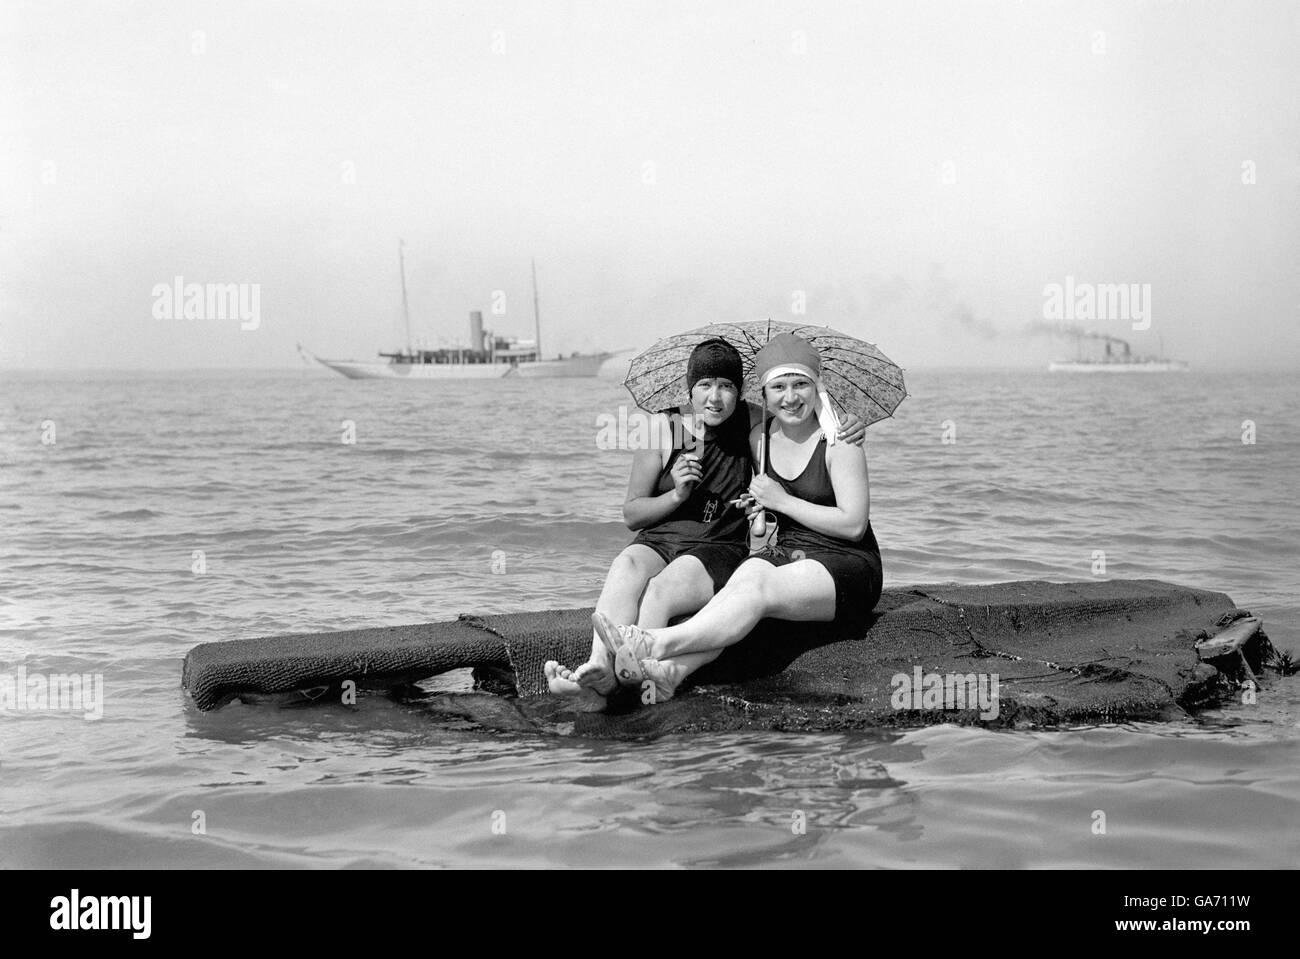 La costa britannica - spiagge - Cowes - 1925. Due bagnanti si godono una vacanza a Cowes, Isola di Wight. Foto Stock